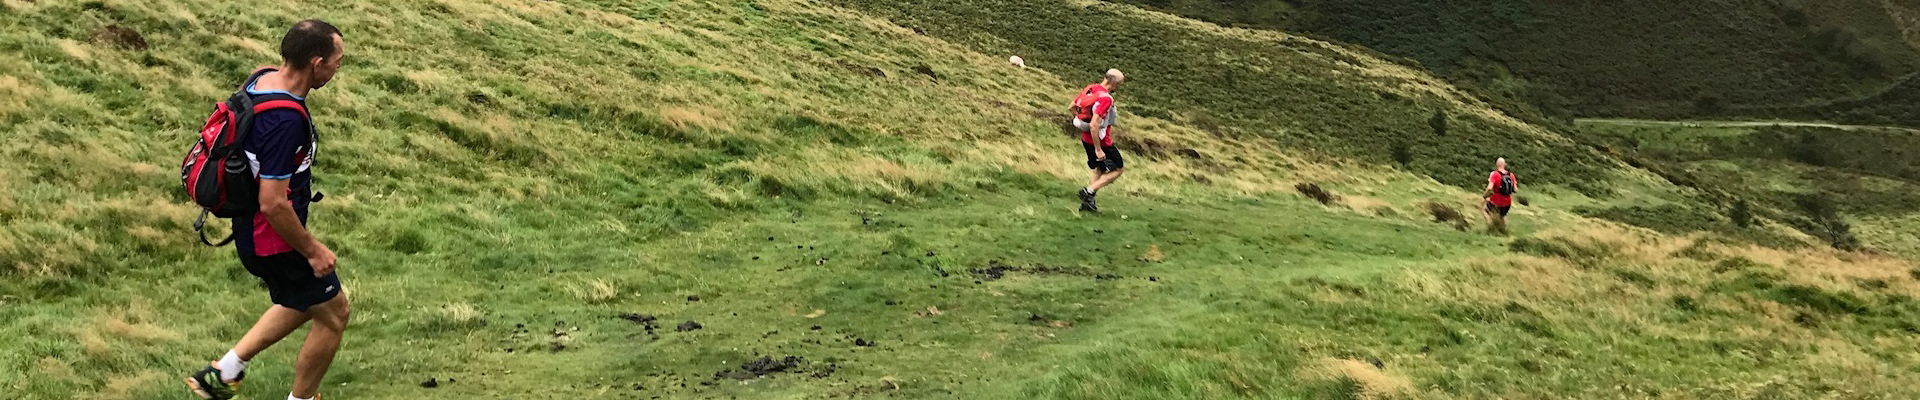 Stowe Trail Run #3 2018